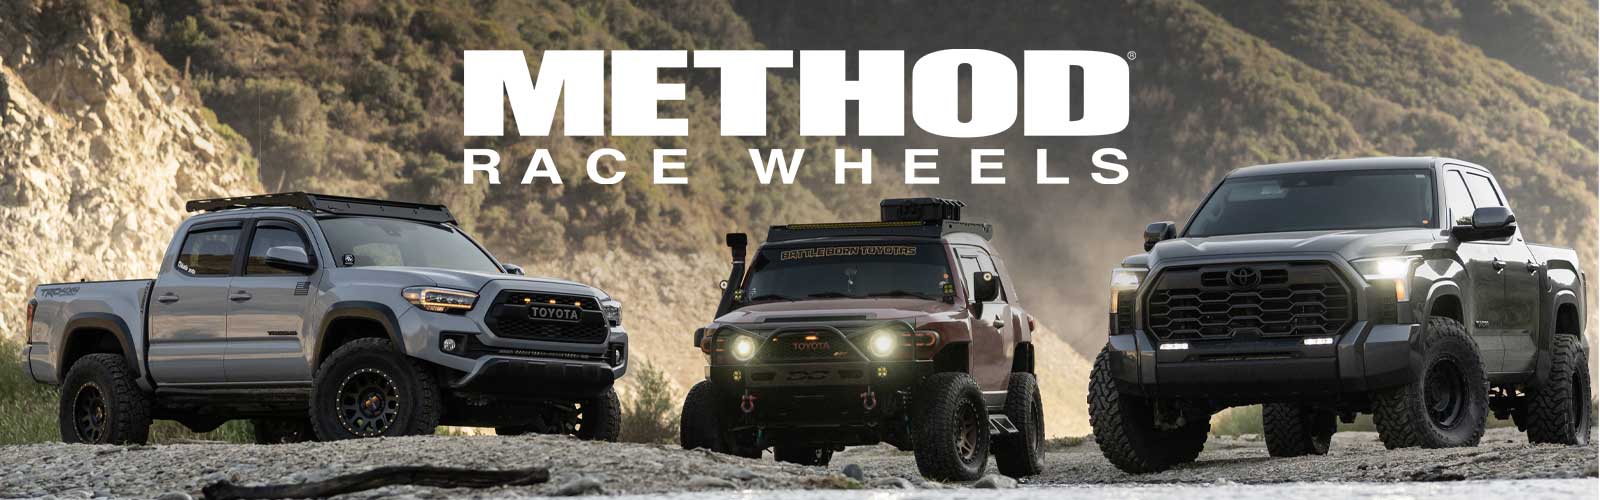 Method Race Wheels for Toyota Tundra, Tacoma, 4Runner, RAV4, Sequoia